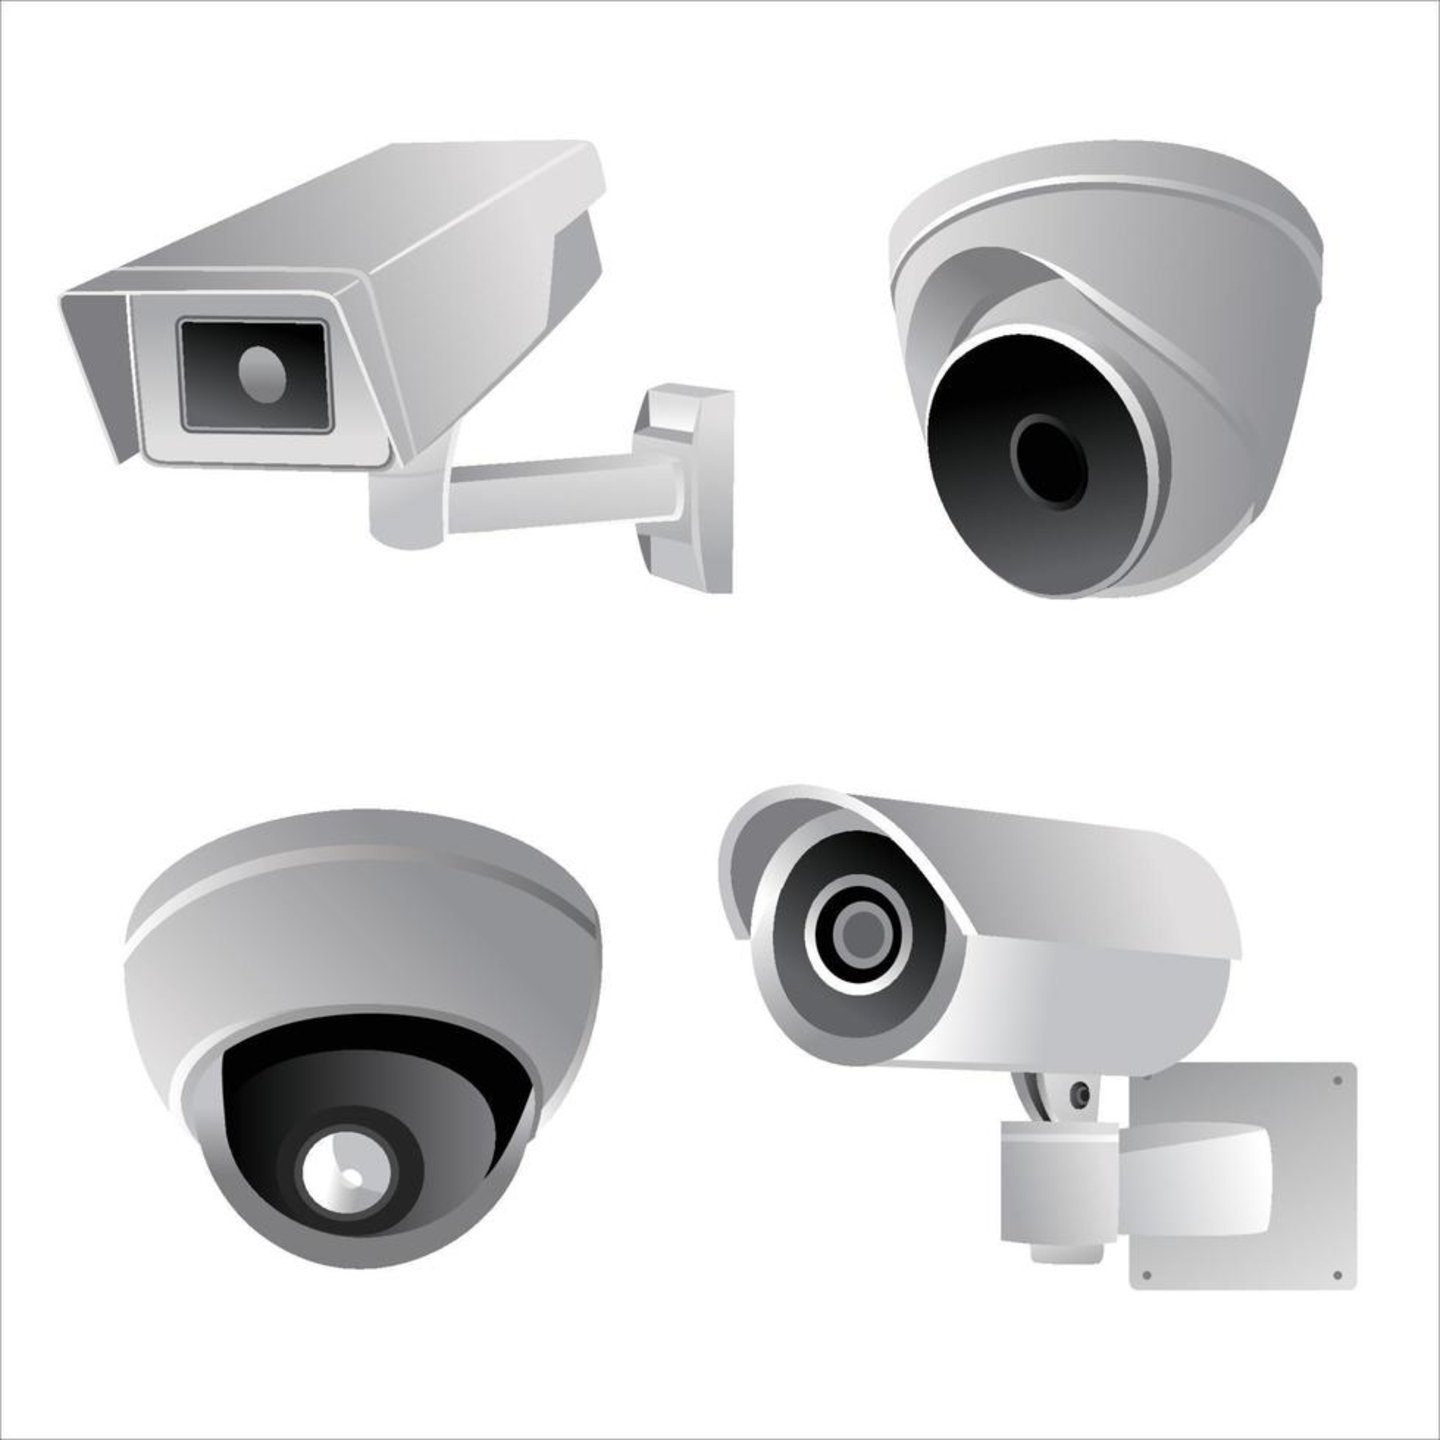 Diferentes diseños de cámaras de vigilancia